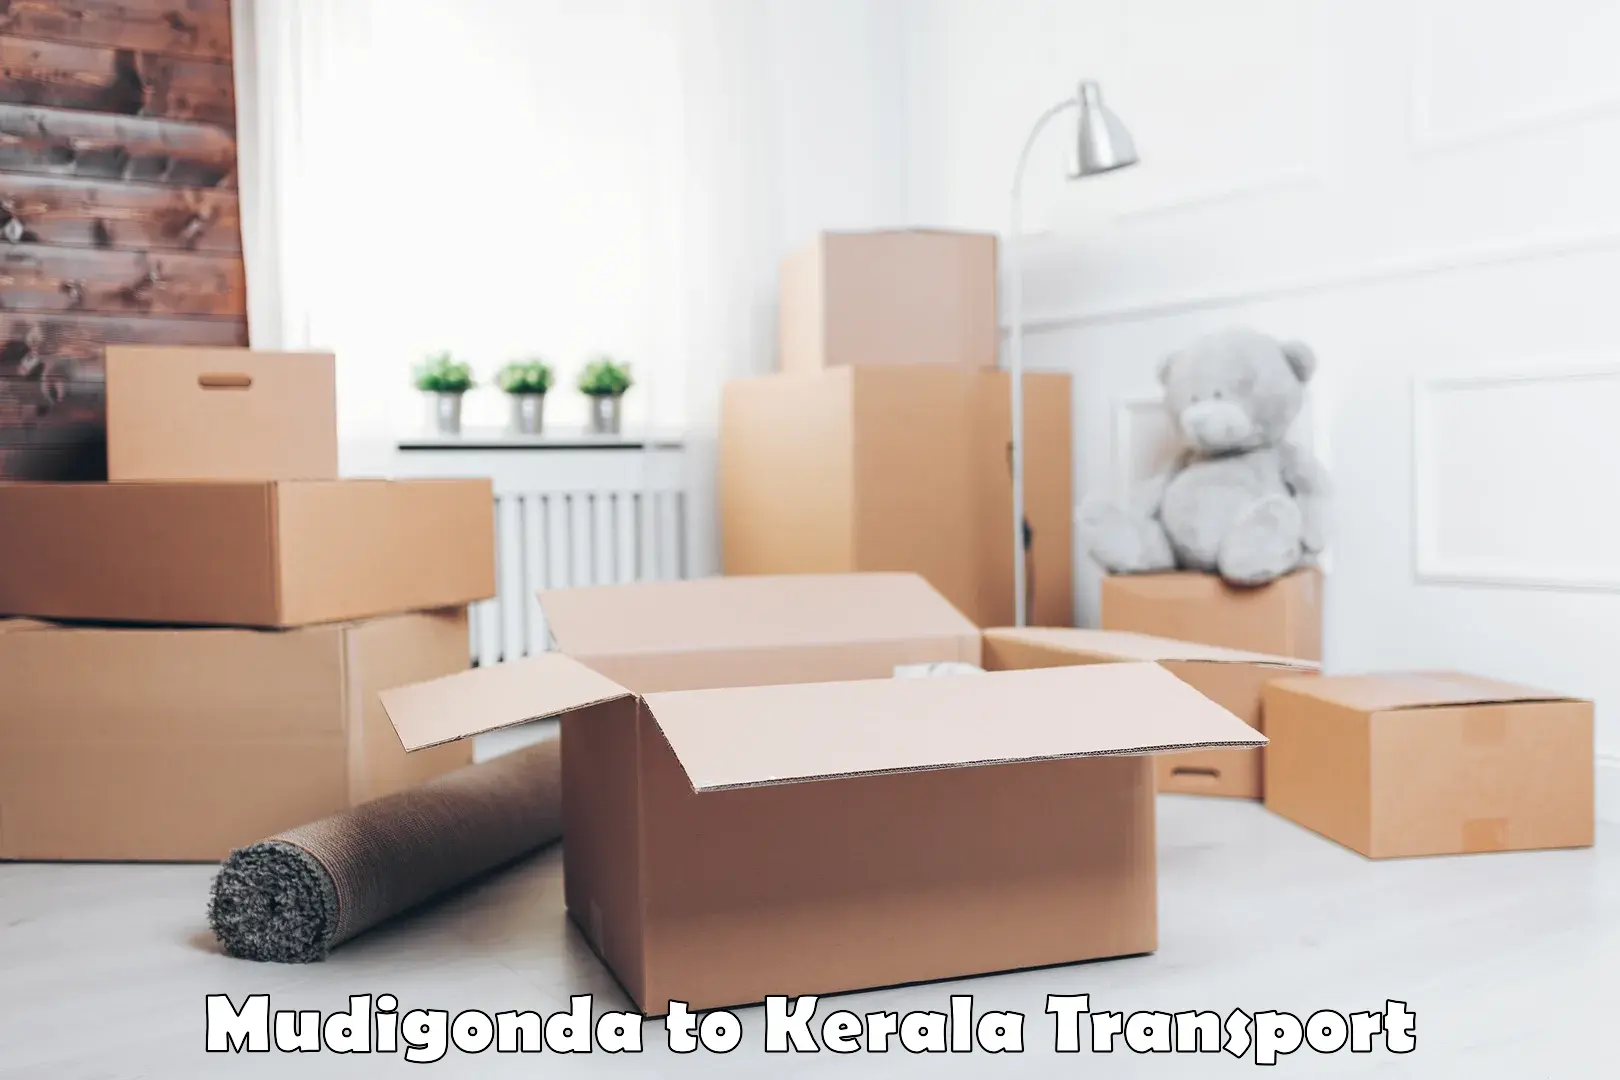 Air cargo transport services Mudigonda to Kalanjoor